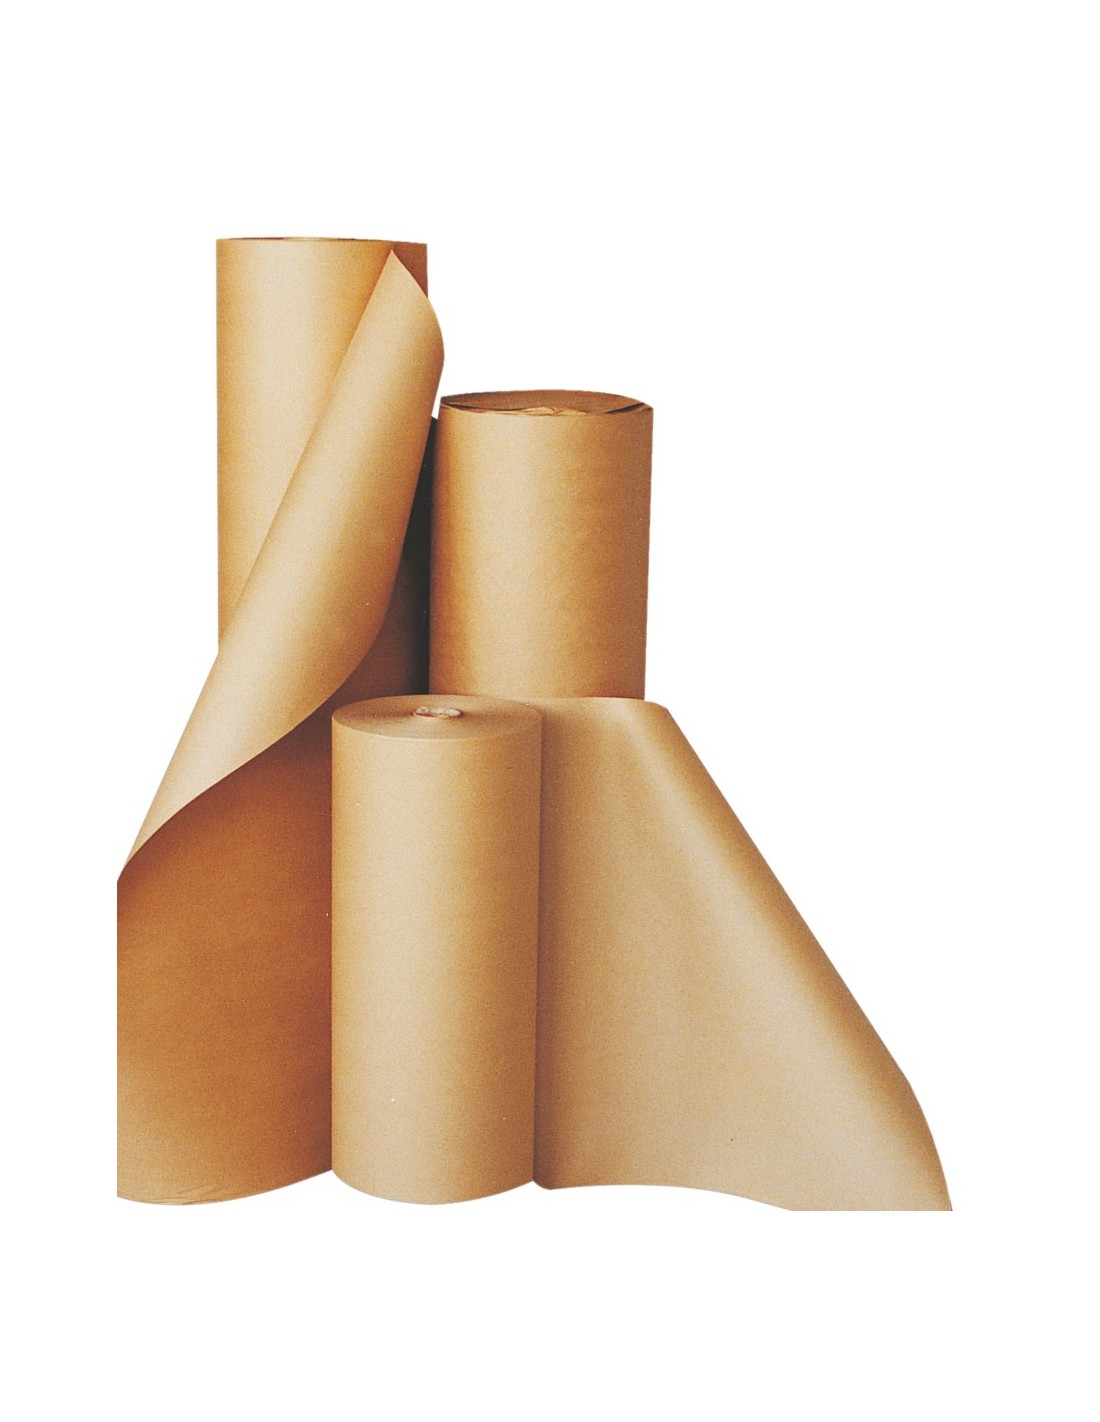 Rouleau de papier kraft brun grande largeur - 160cm x 300m - 72g/m²